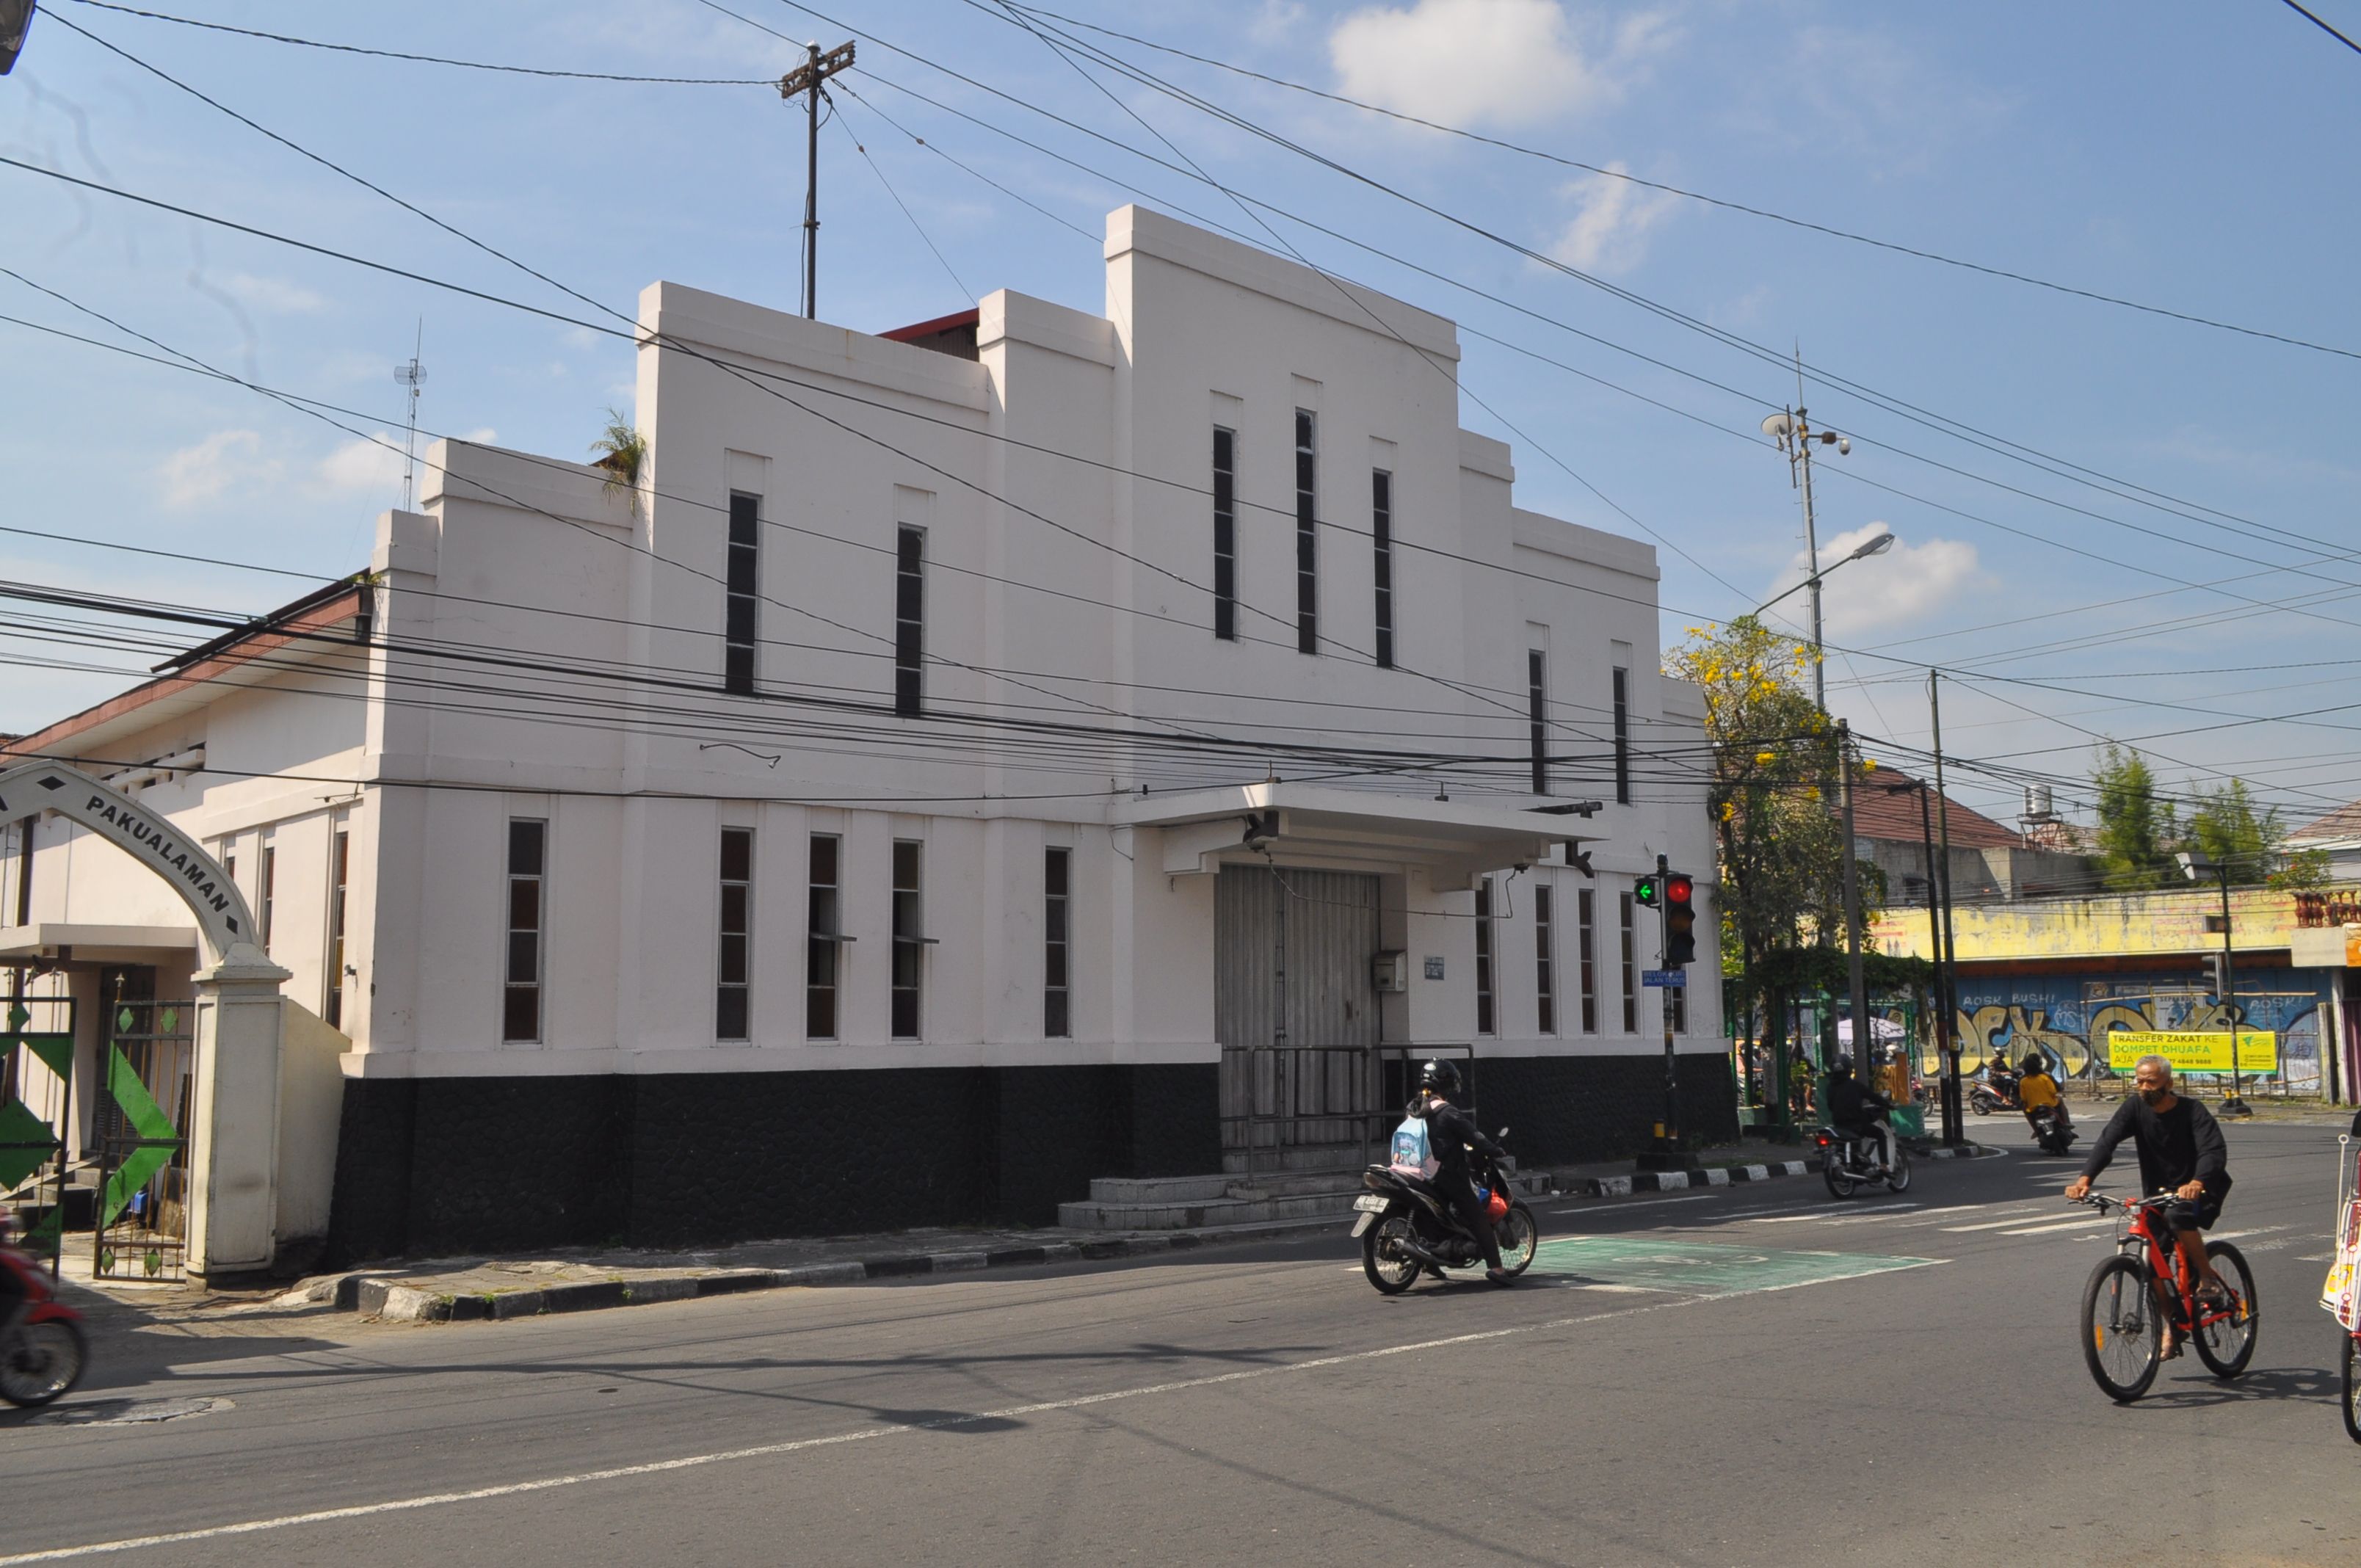 Bekas gedung Bioskop Permata sebagai bangunan Cagar Budaya.   